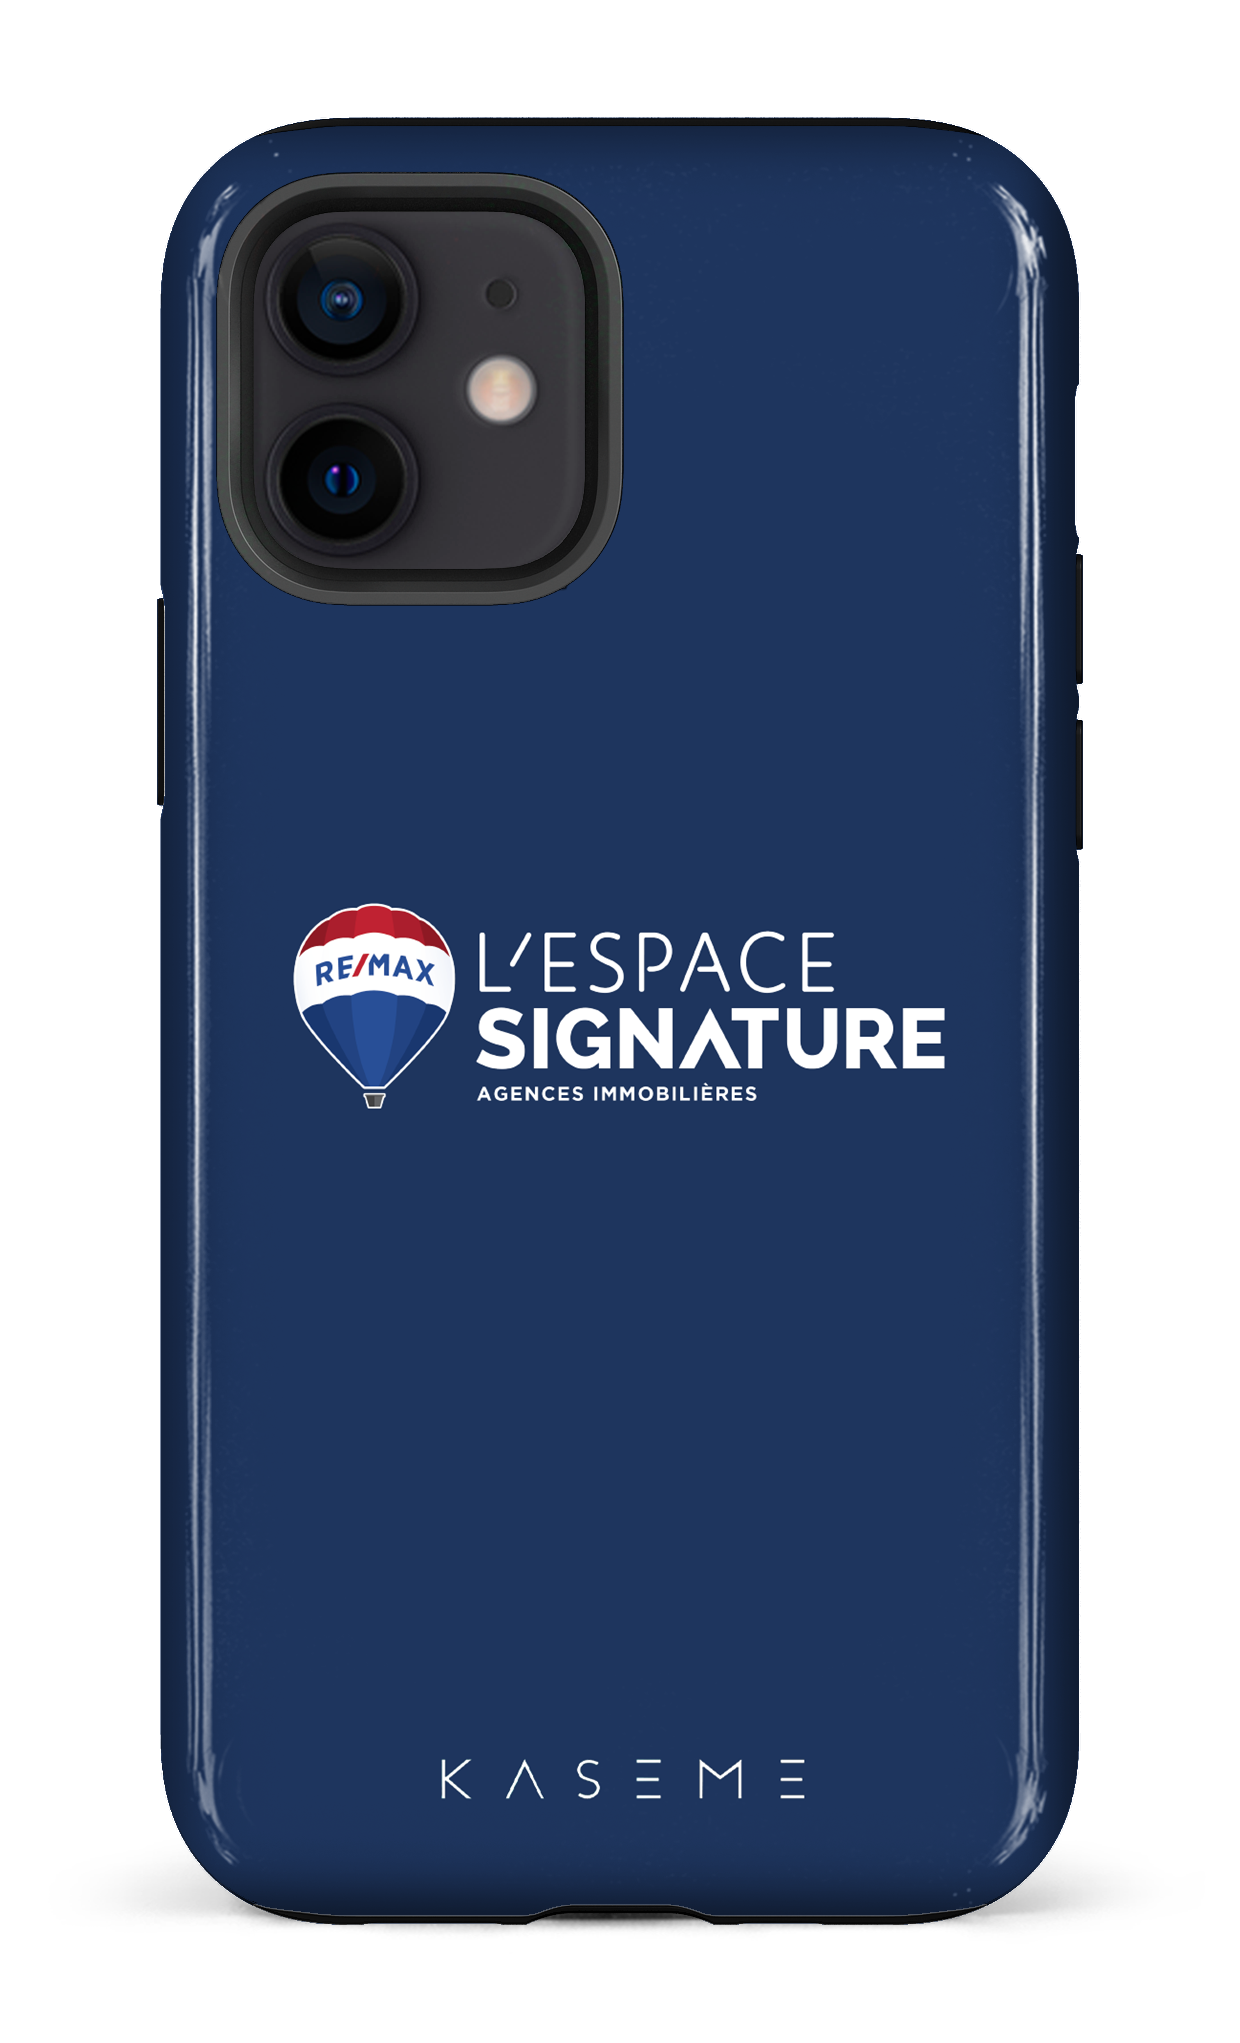 Remax Signature L'espace Bleu - iPhone 12